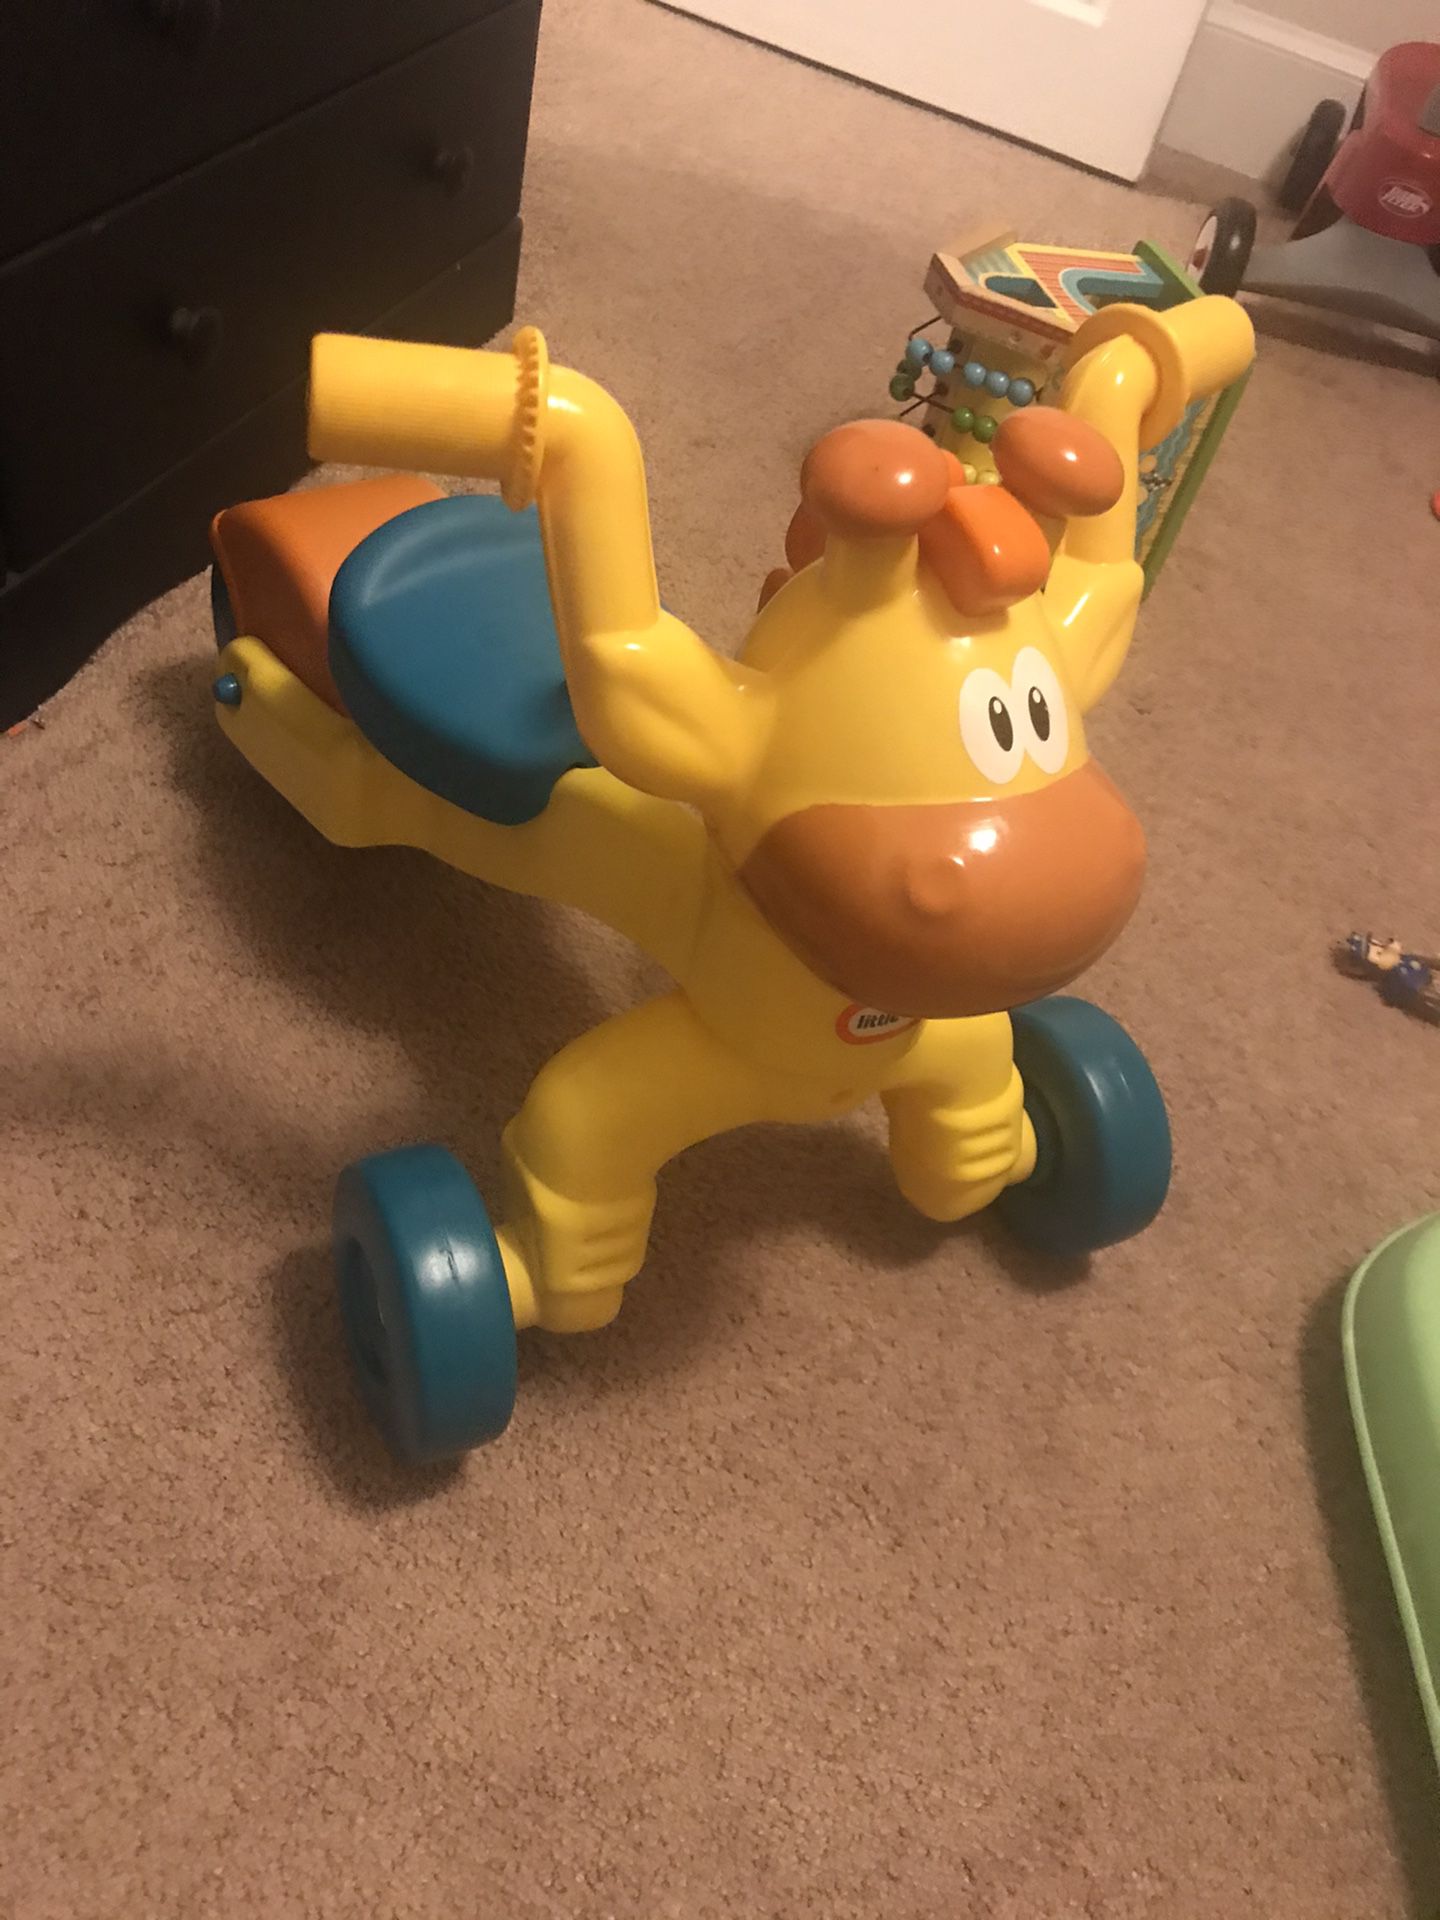 Little tikes giraffe ride on toy